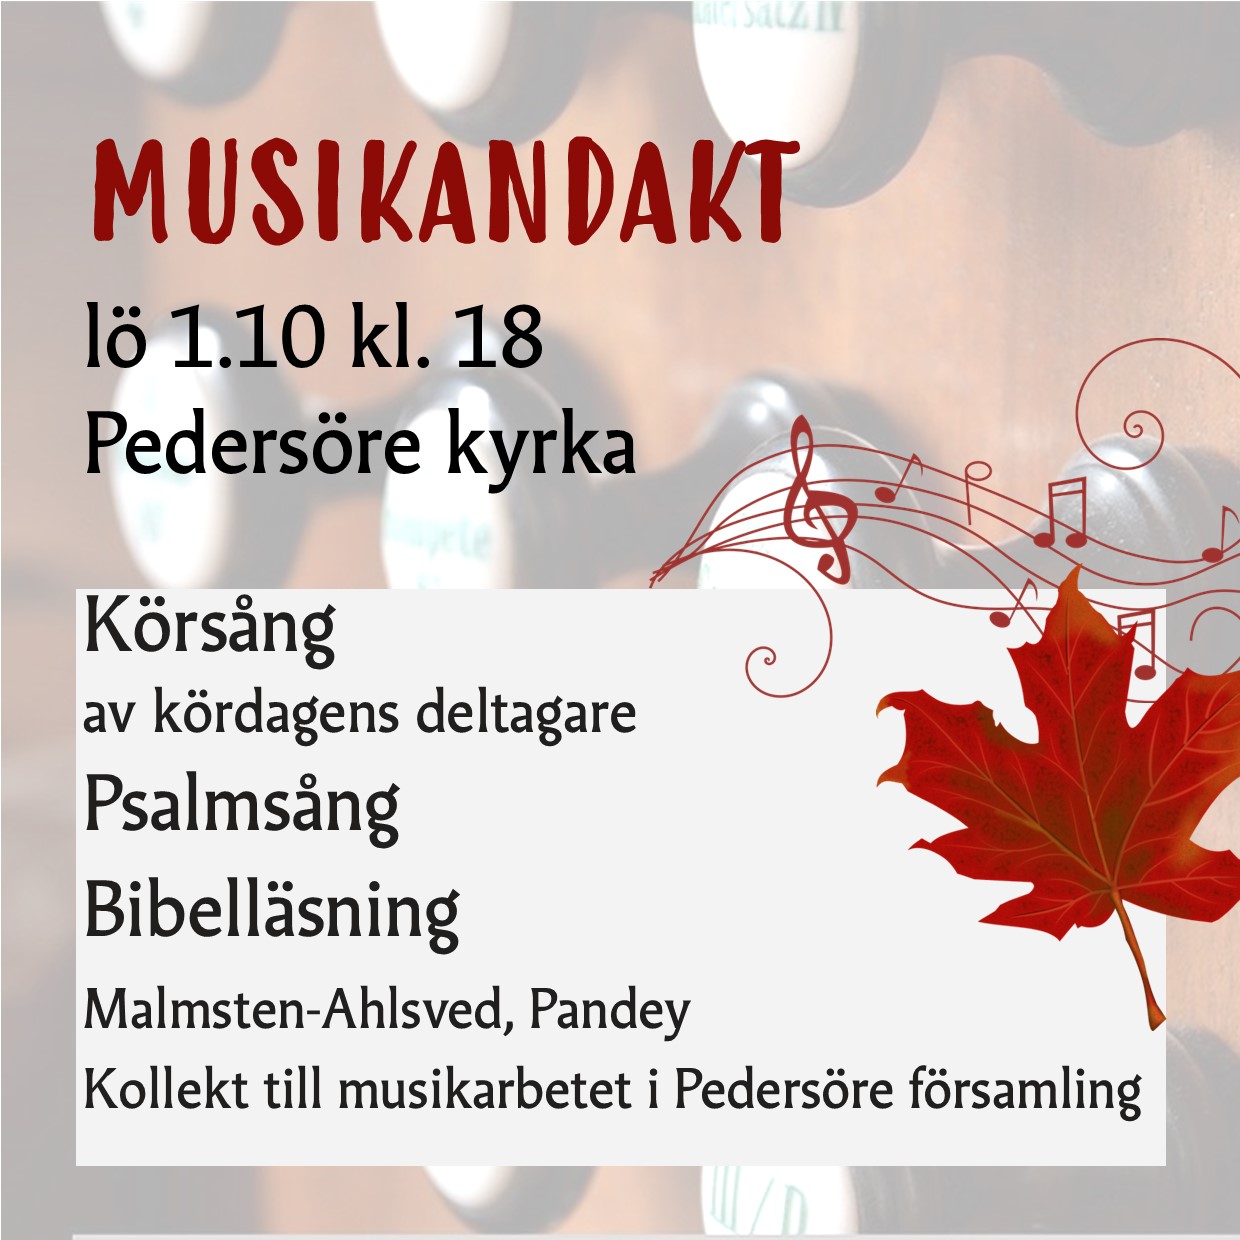 Musikandakt Pedersöre kyrka 1.10 kl. 18